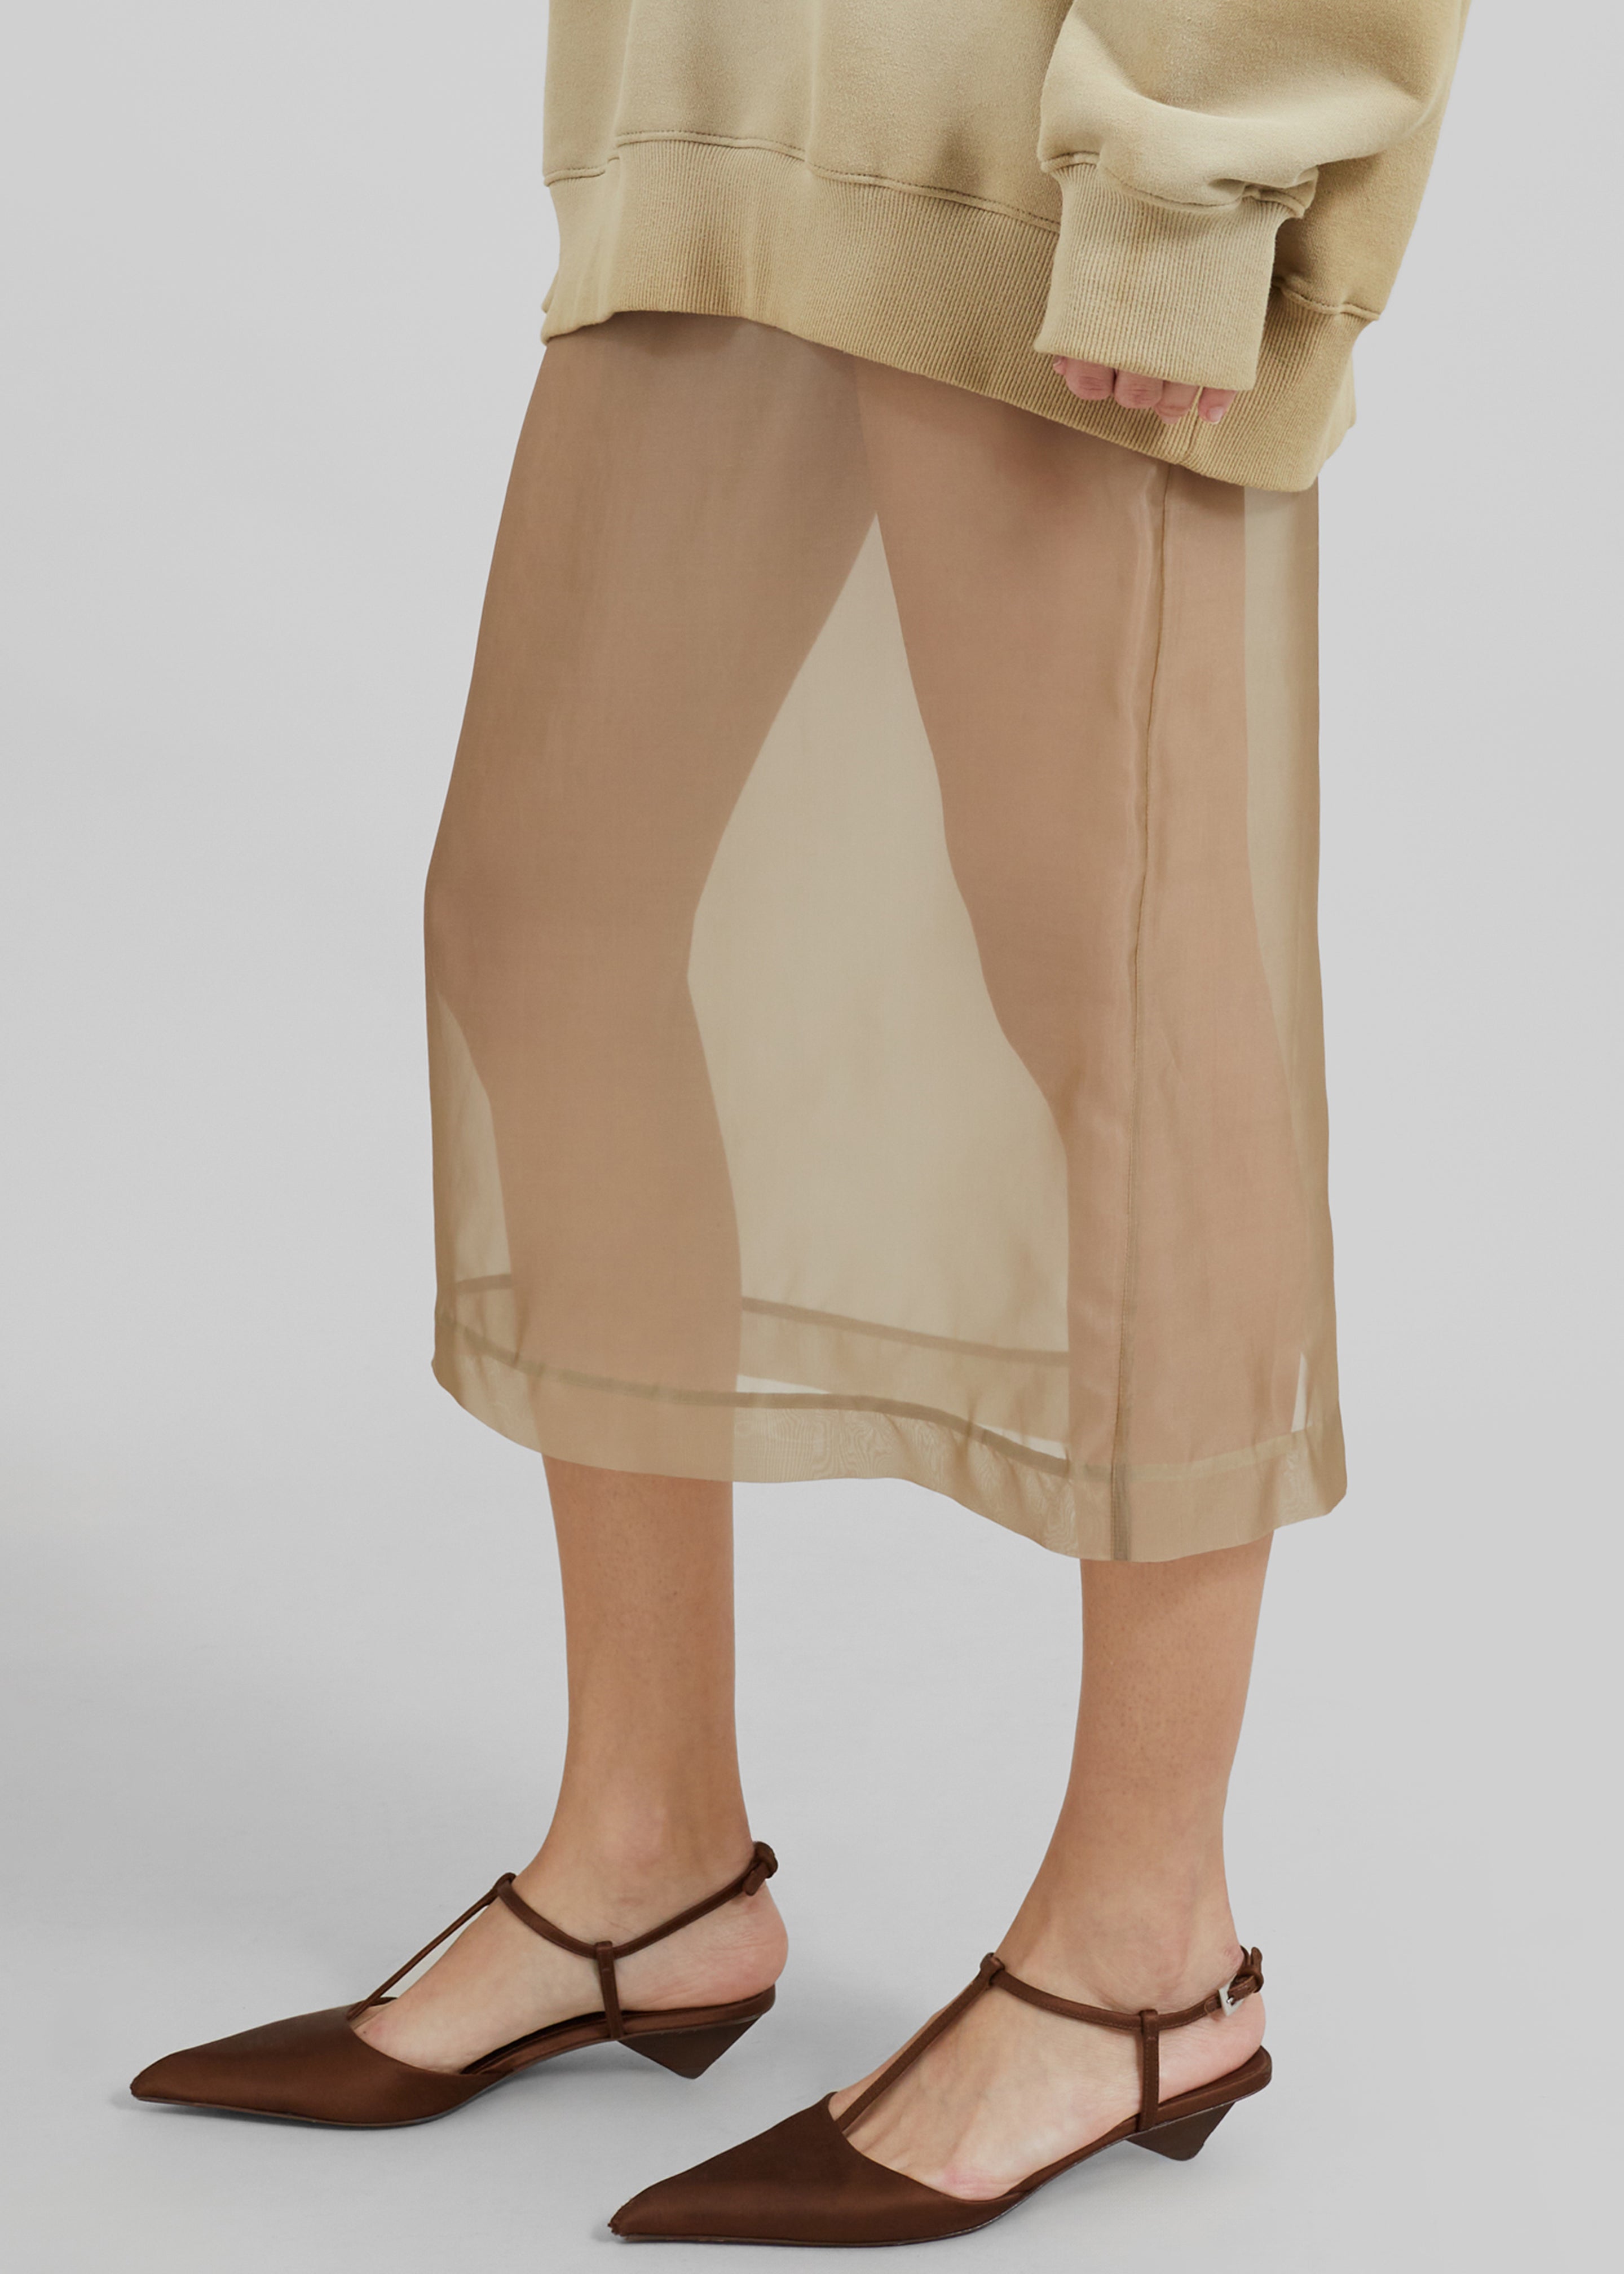 Peri Sheer Midi Skirt - Desert Sand - 2